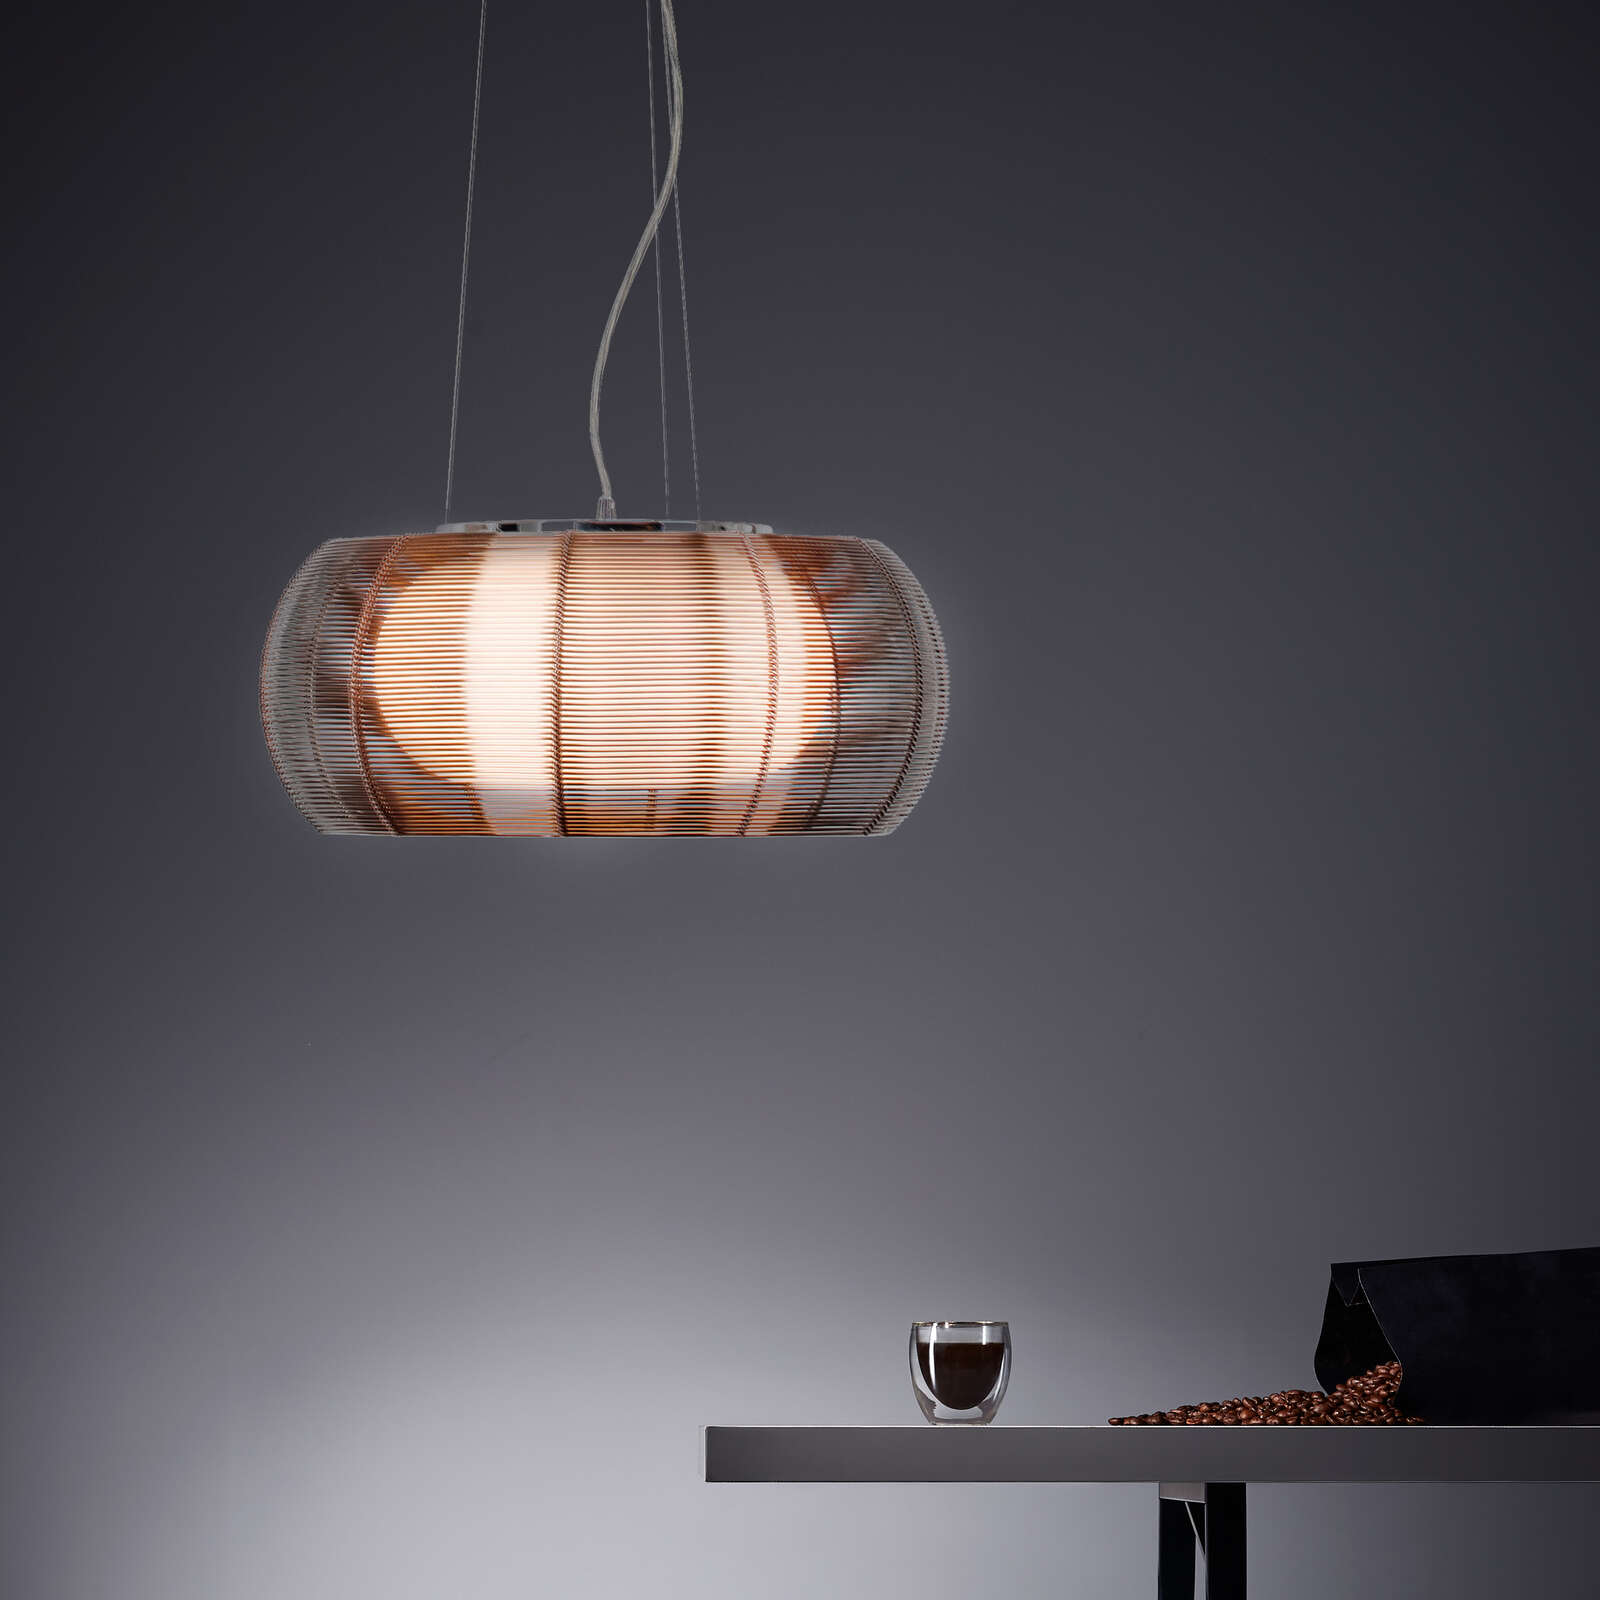             Glazen hanglamp - Maxime 6 - Bruin
        